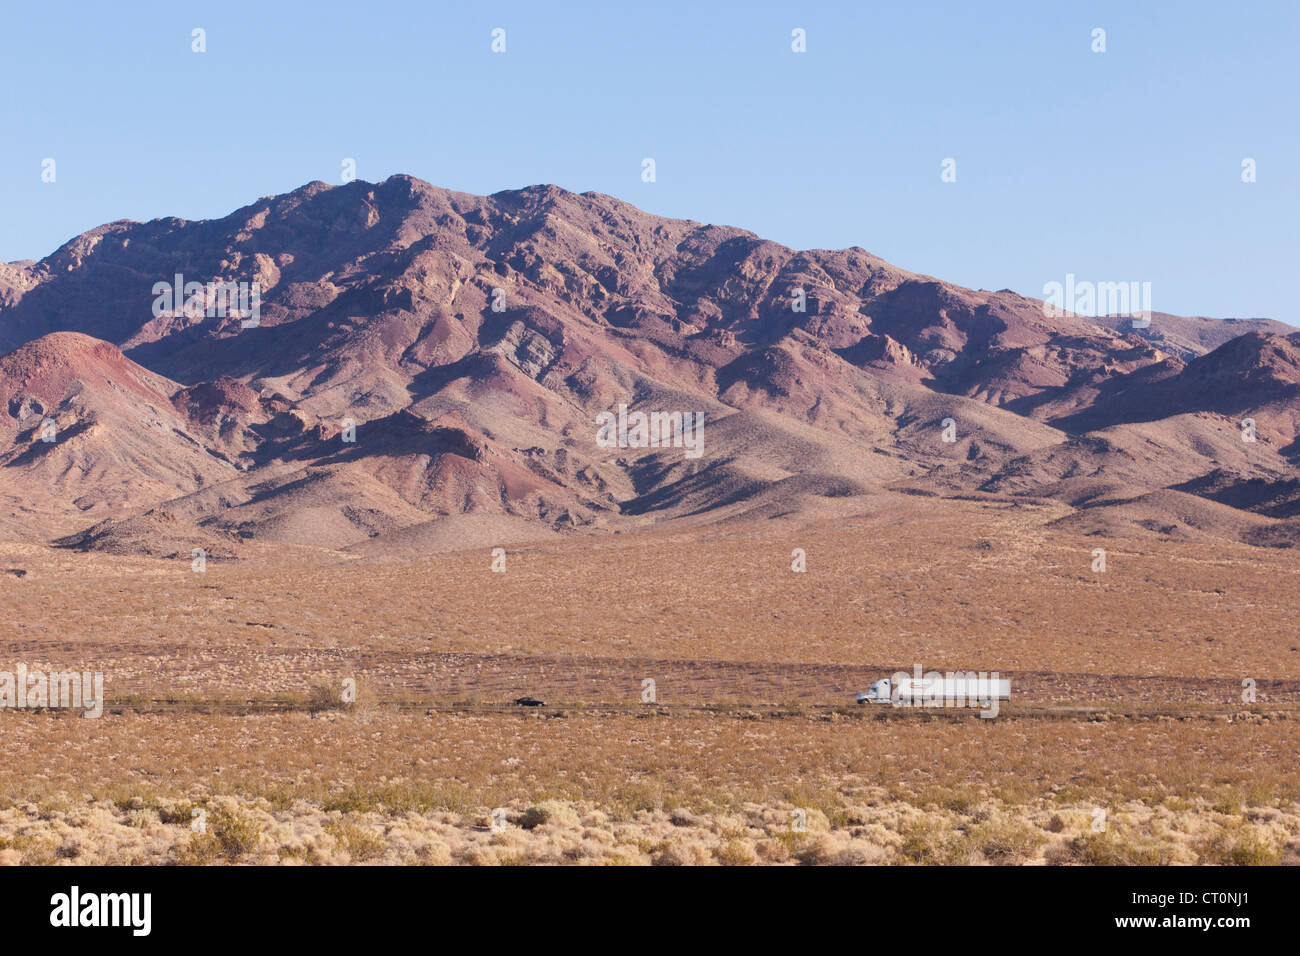 Des montagnes du désert du sud-ouest américain - Californie USA Banque D'Images